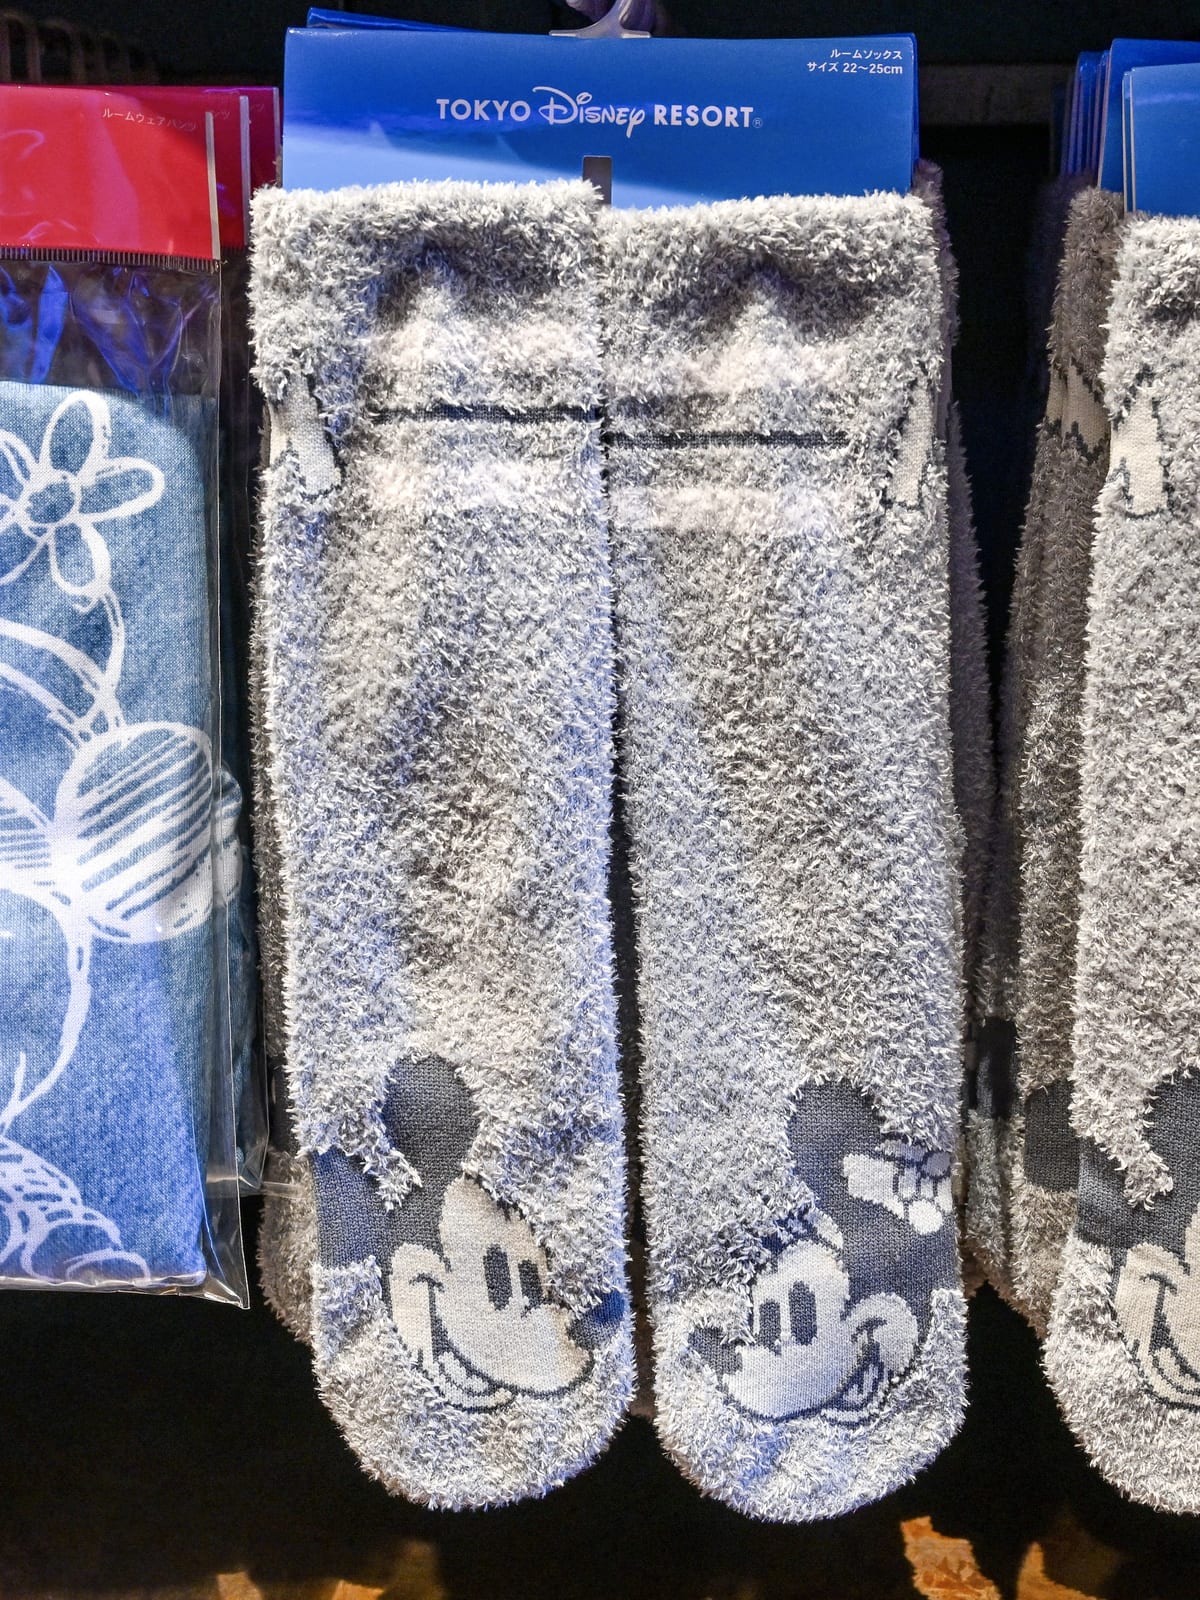 東京ディズニーランド「ミッキーマウス」ルームソックス・靴下